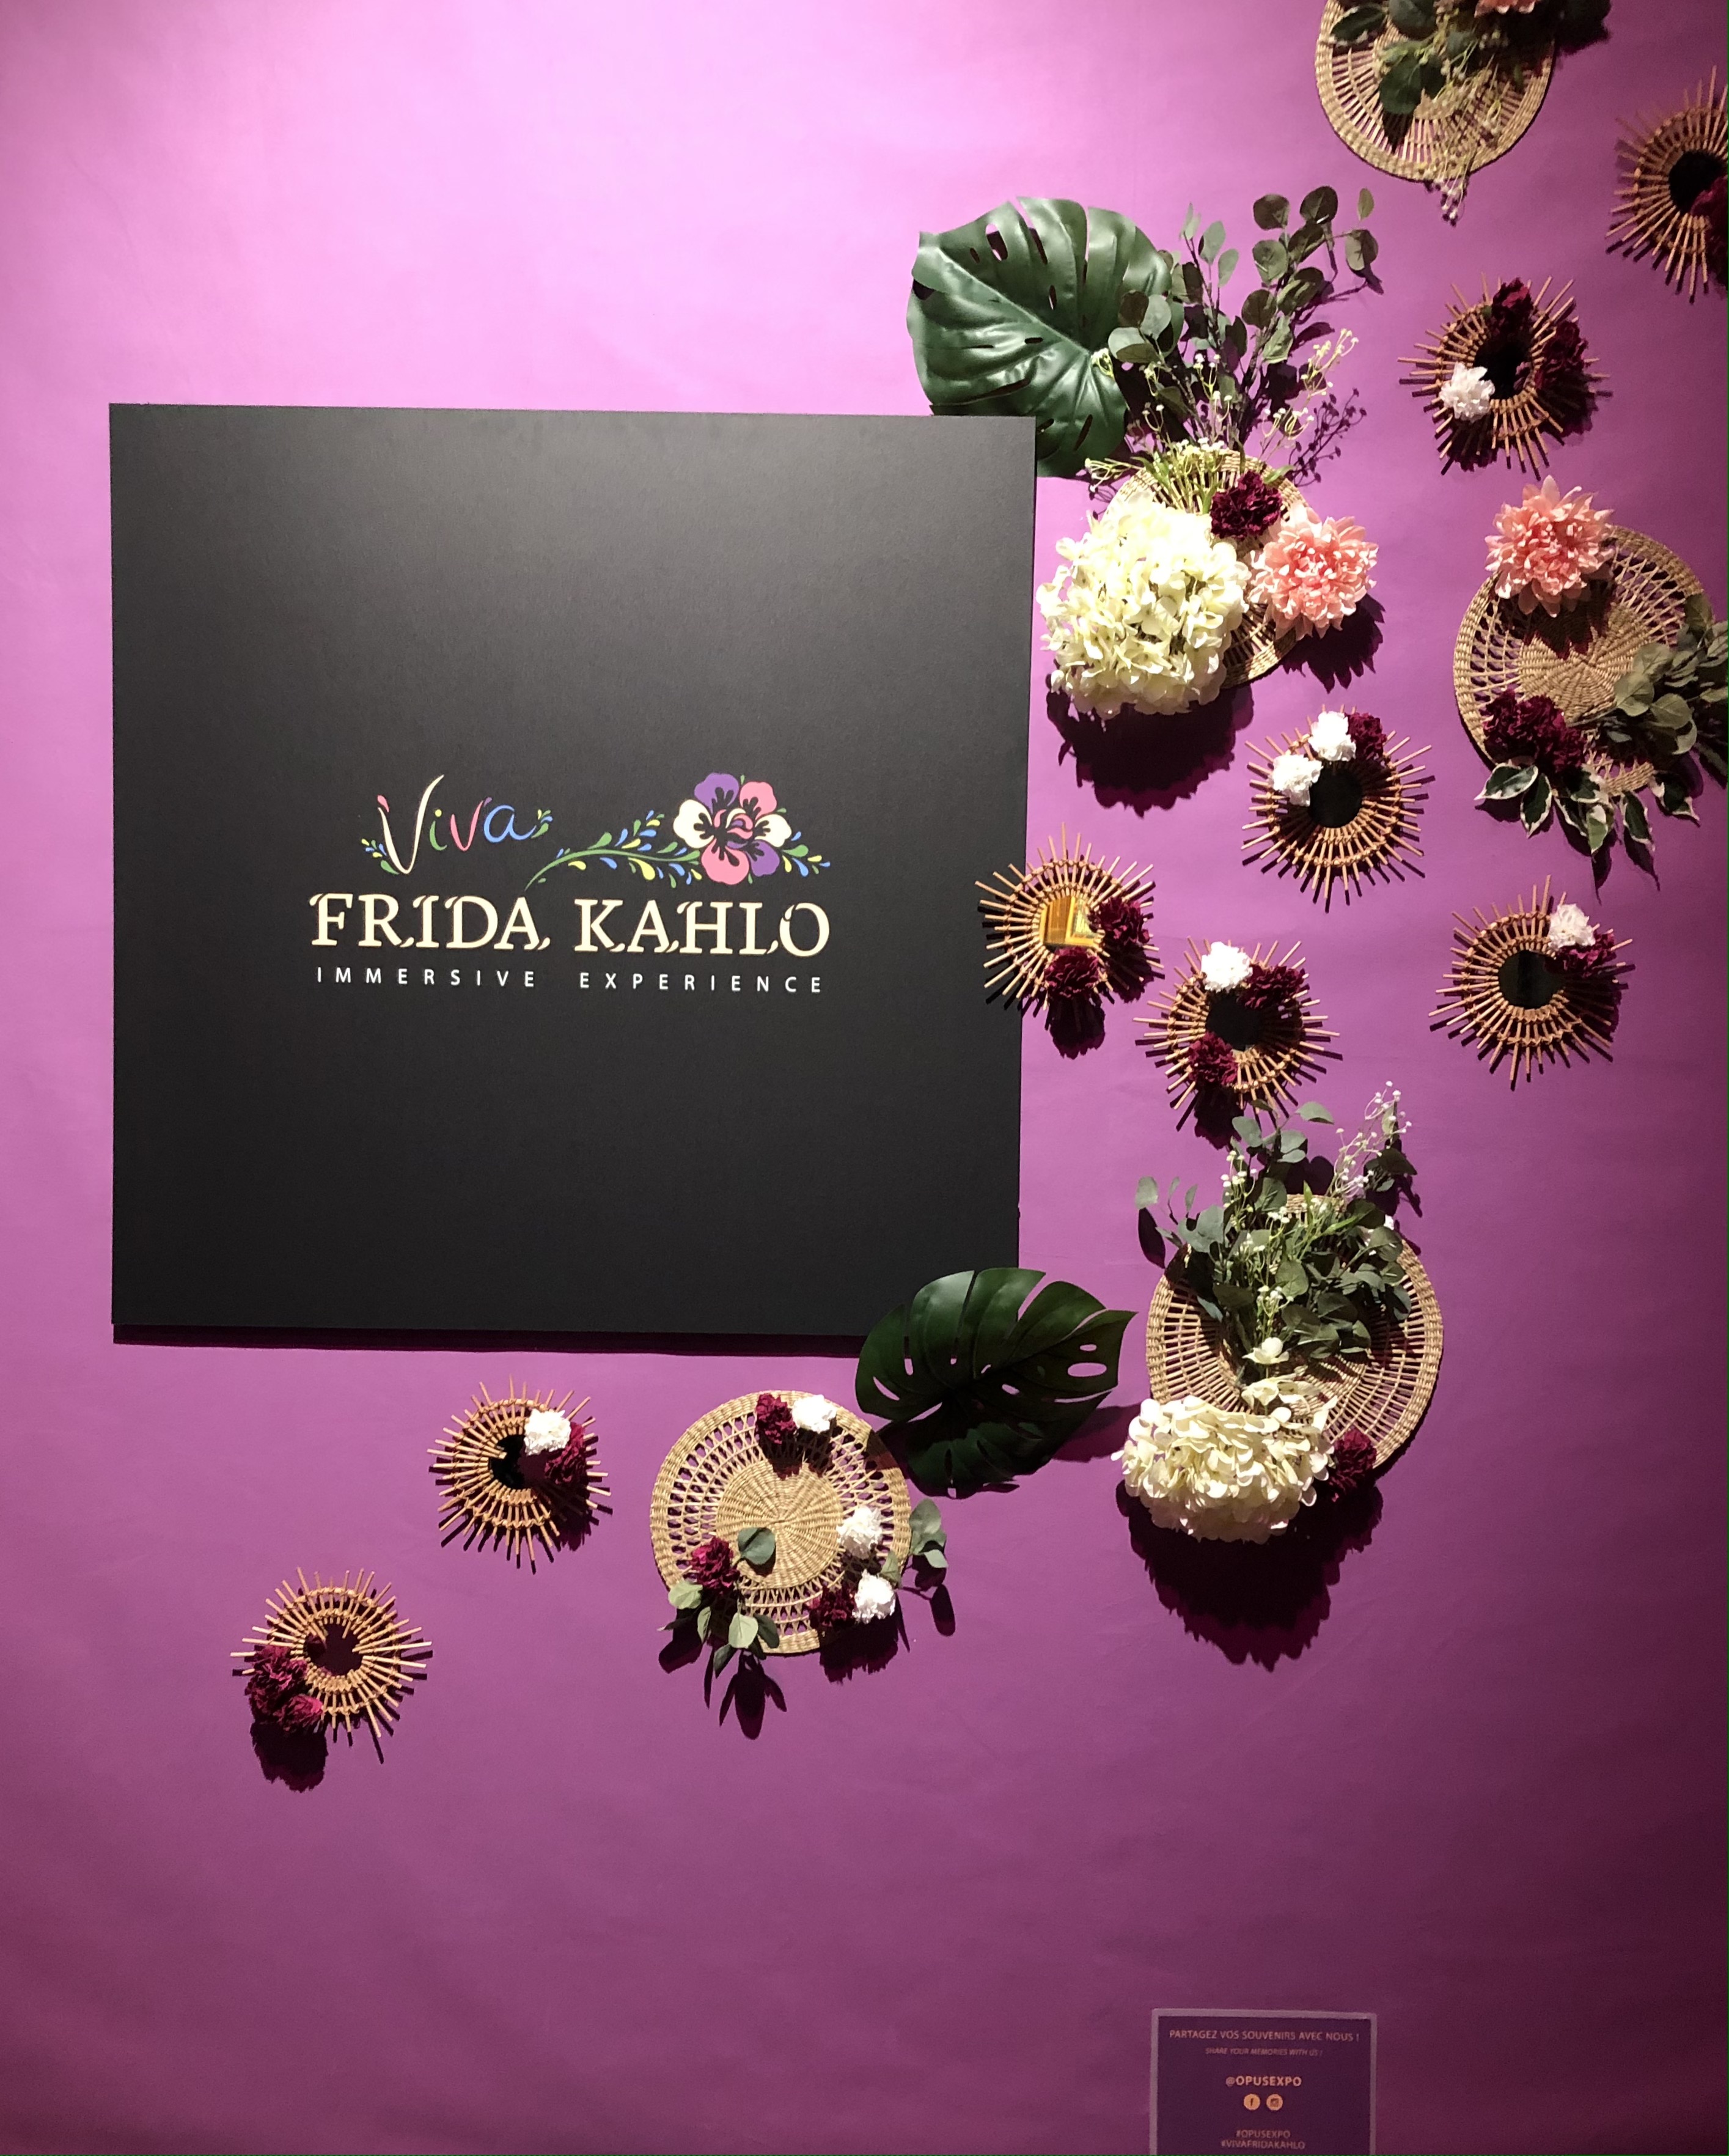 프리다 칼로 사진전&#44; 프리다 칼로&#44; Frida Kahlo&#44; 프리다 칼로 작품&#44; 예술 작품&#44; 프리다 칼로 전시회&#44; 해외 생활&#44; 미술 전시회&#44; 프리다 칼로 그림&#44; 프리다 칼로 작품&#44; 프리다 칼로 일대기